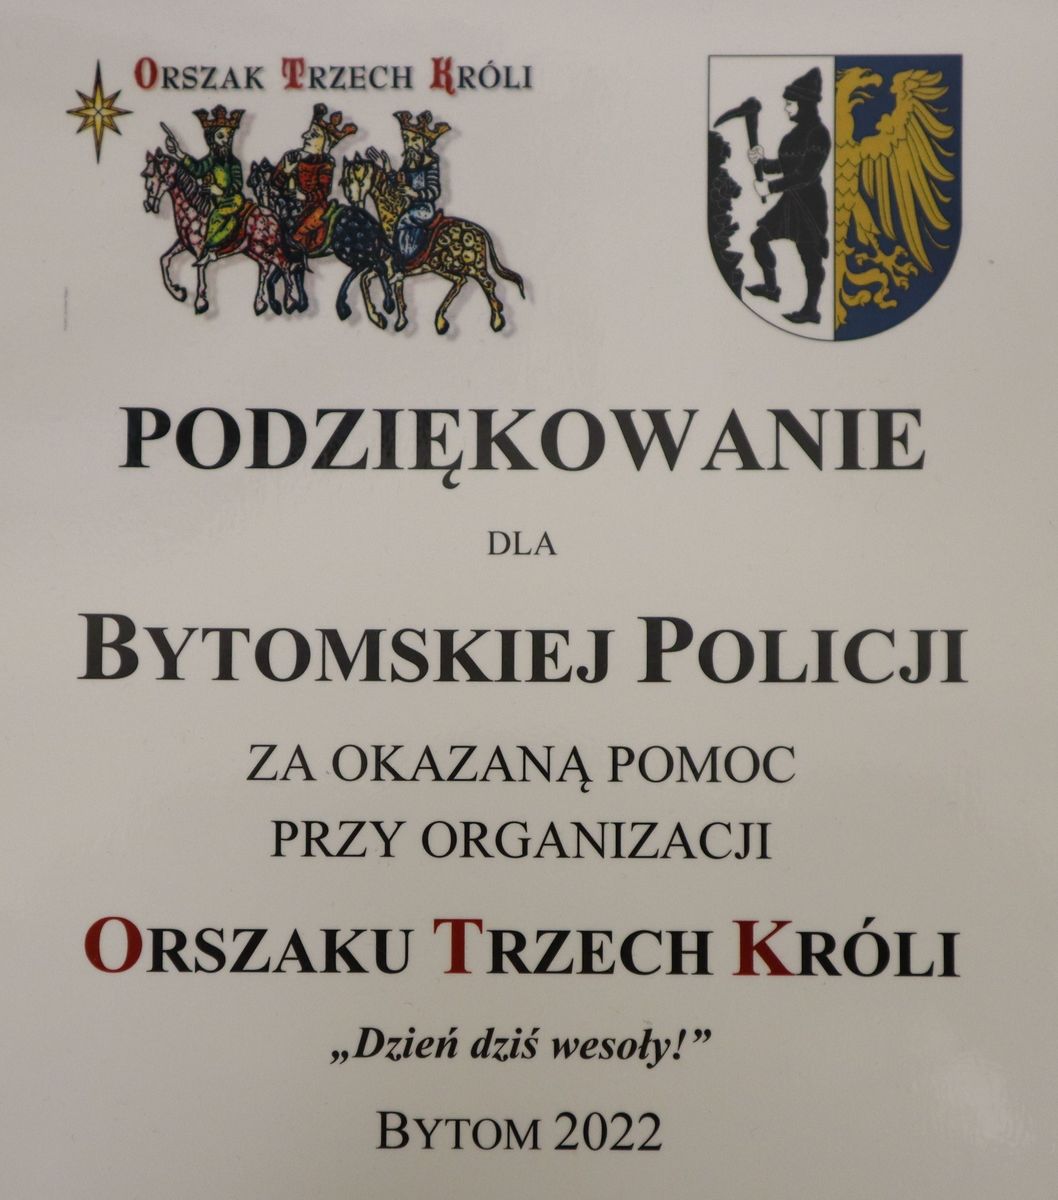 Podziękowanie dla bytomskiej Policji za okazaną pomoc przy organizacji Orszaku Trzech Króli "Dzień dziś wesoły" Bytom 2022